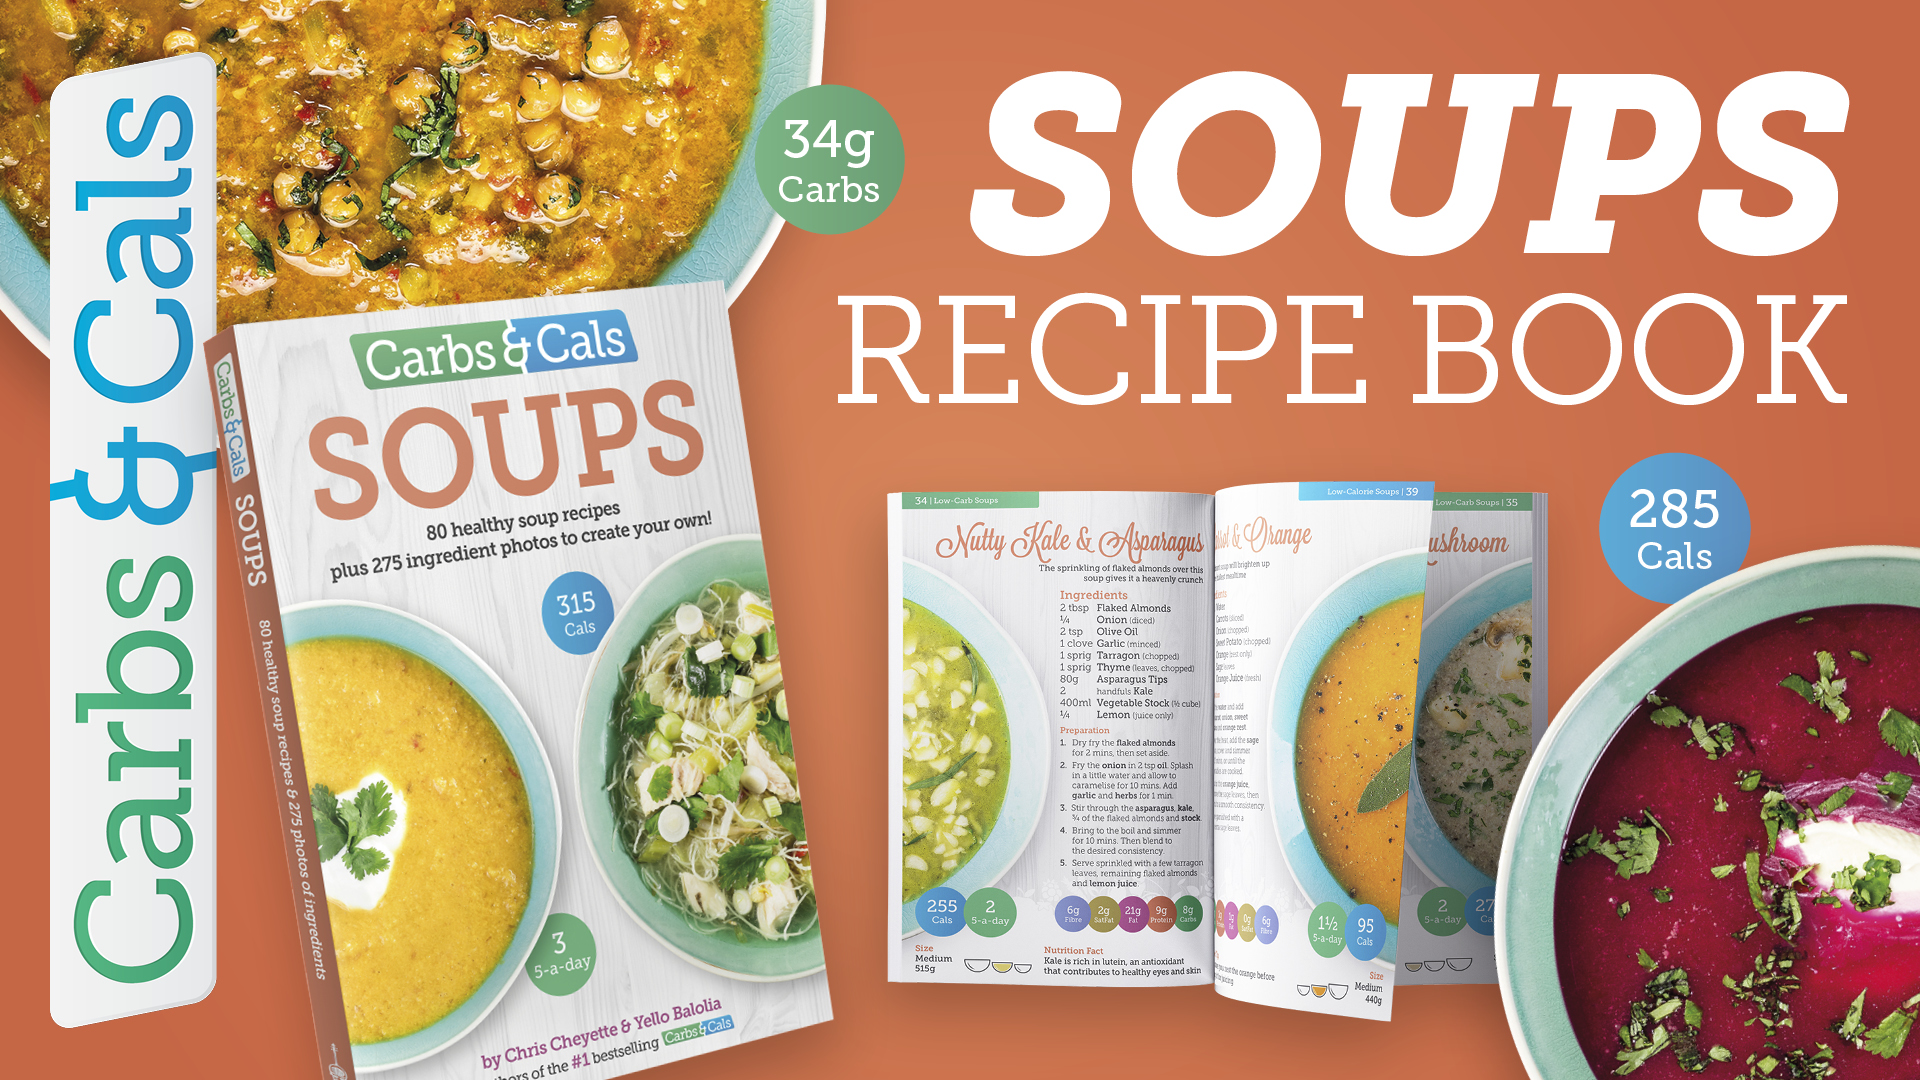 Video - Carbs & Cals Soups Recipe Book